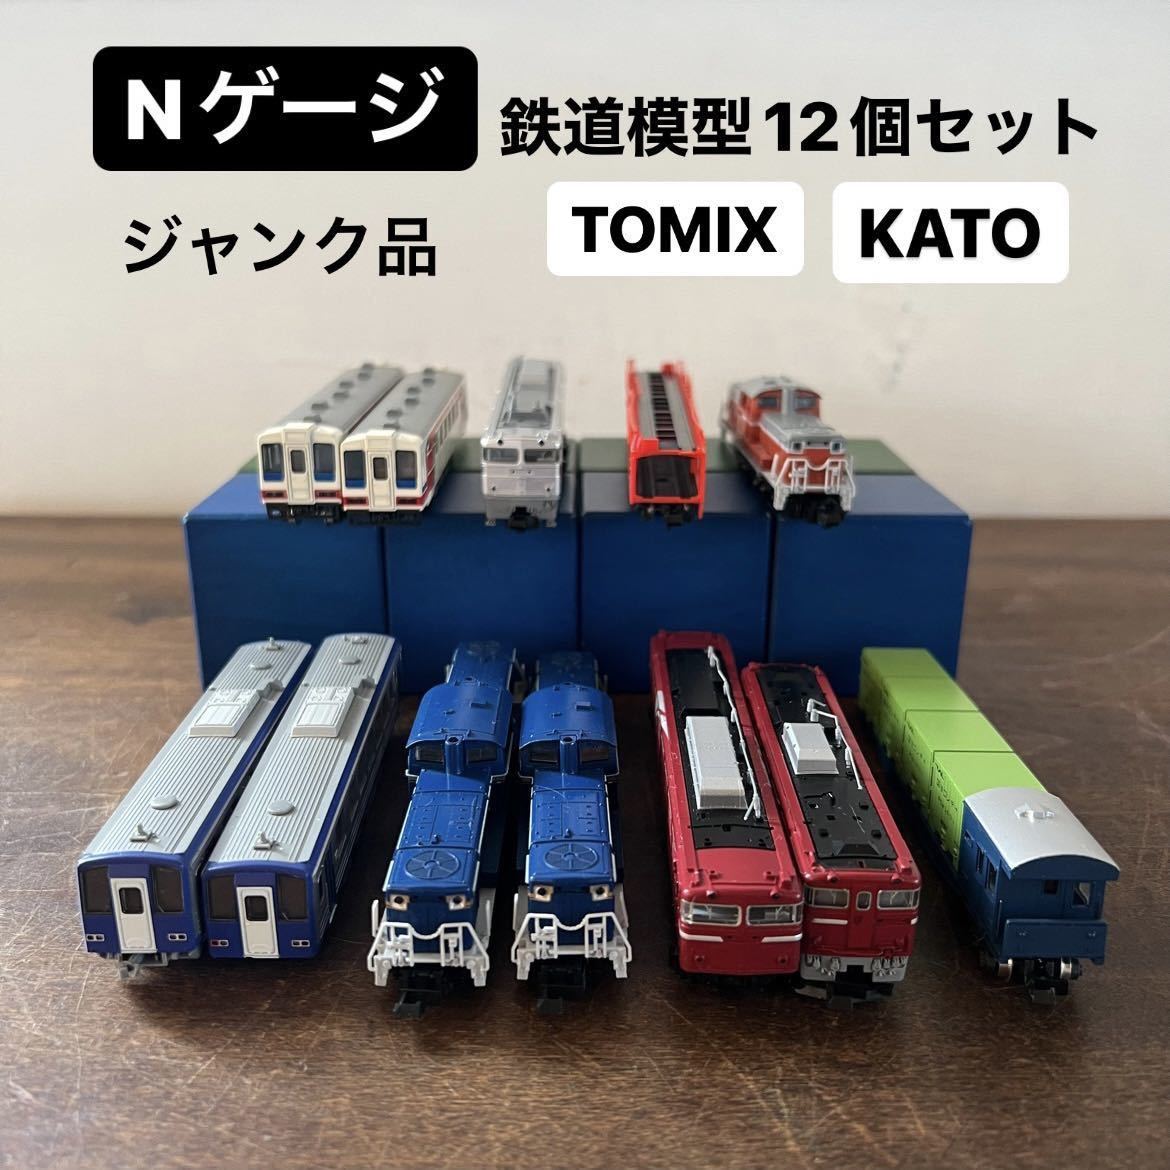 Yahoo!オークション - Nゲージ ジャンク品 鉄道模型セット KATO TOMIX...